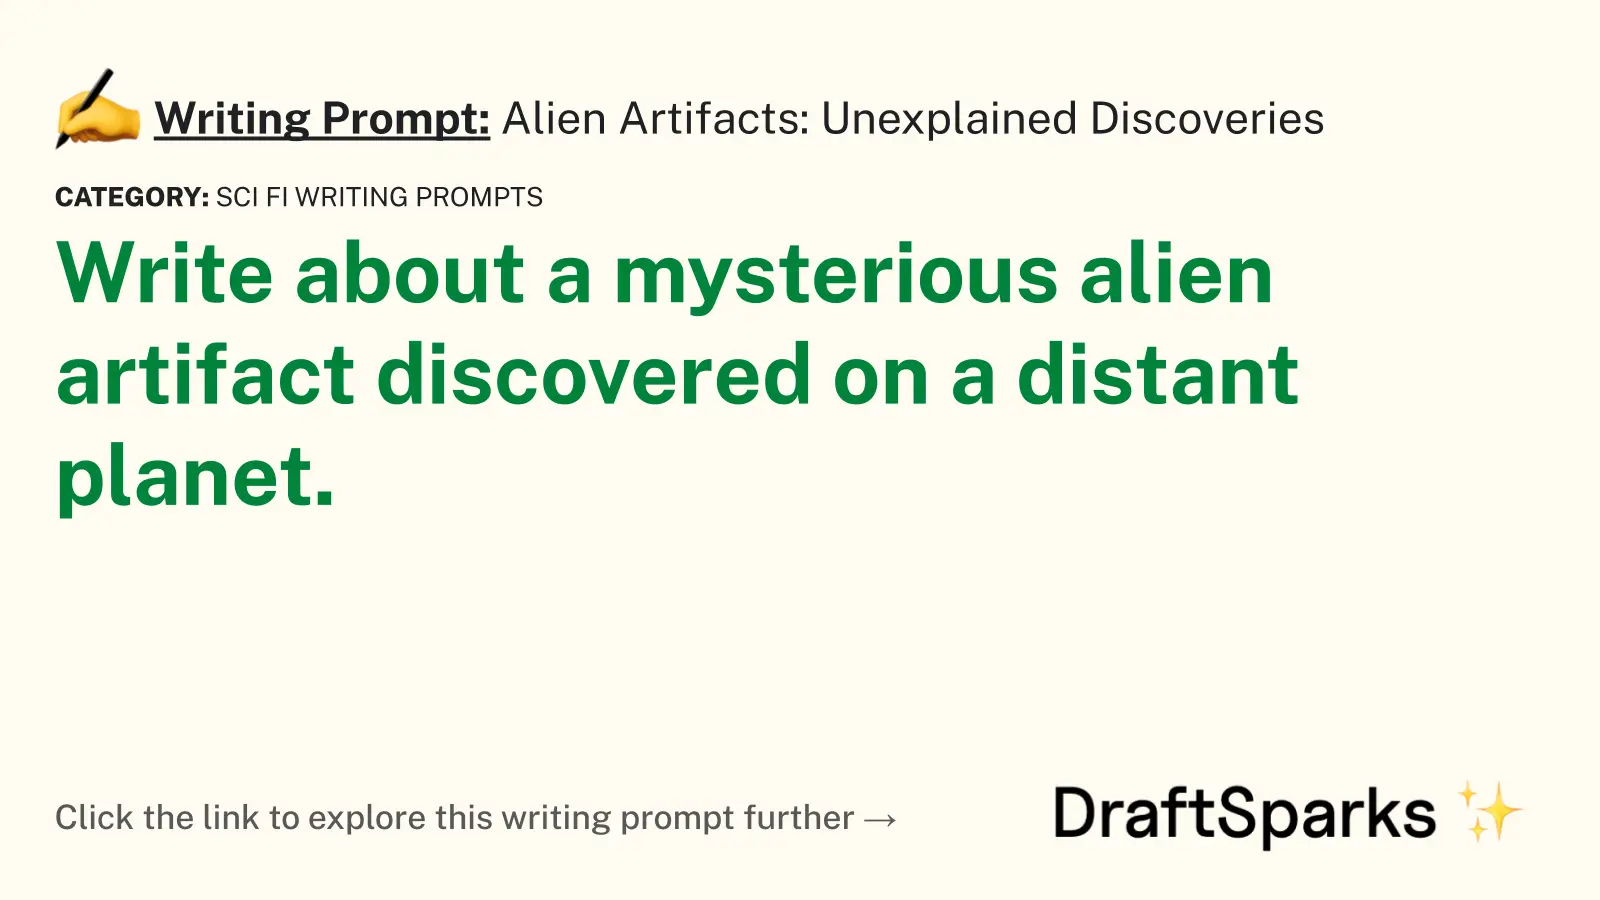 Alien Artifacts: Unexplained Discoveries